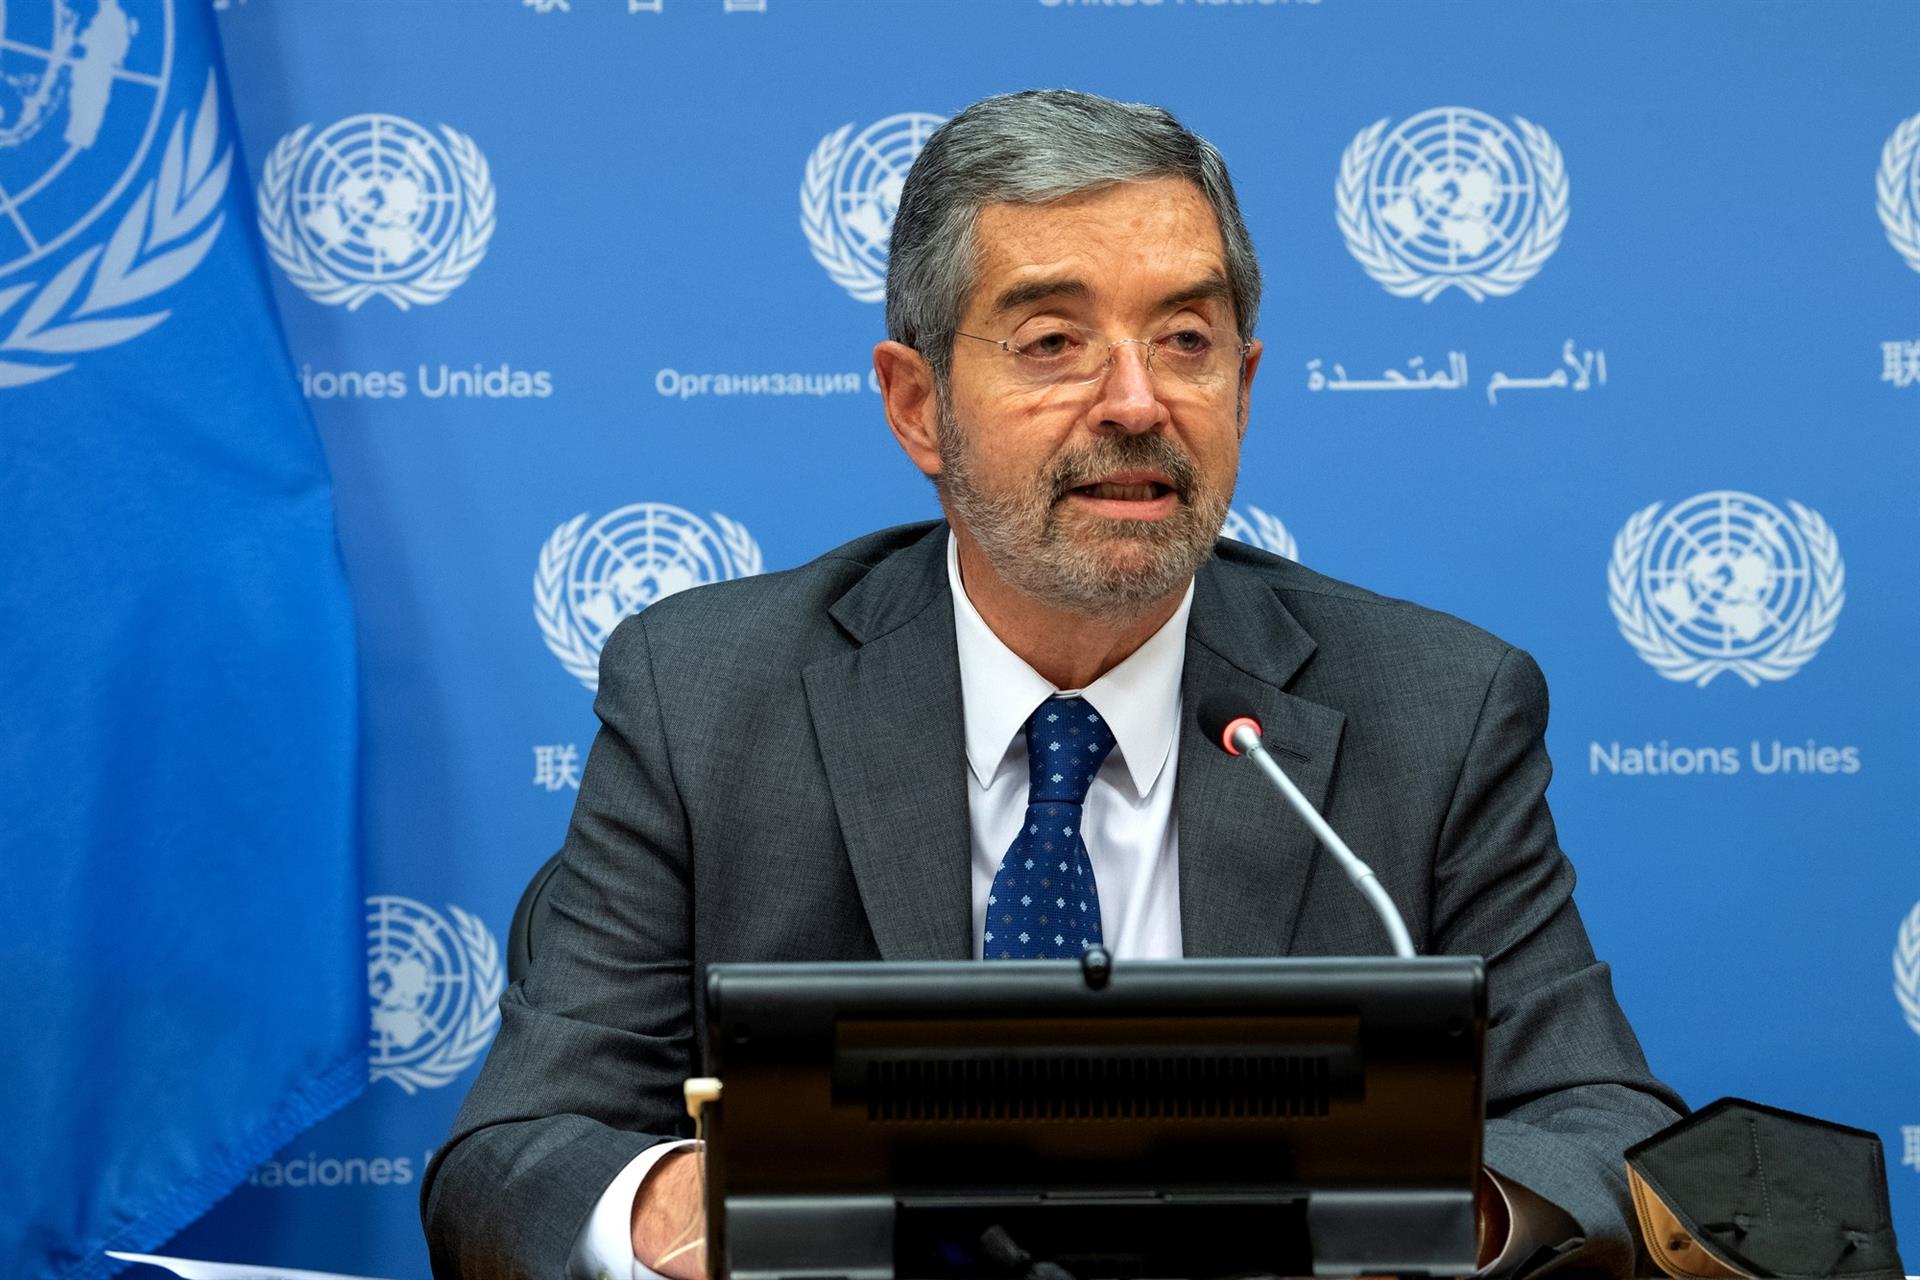 El embajador mexicano ante la ONU remarcó la necesidad de resolver problemas como la crisis migratoria global.